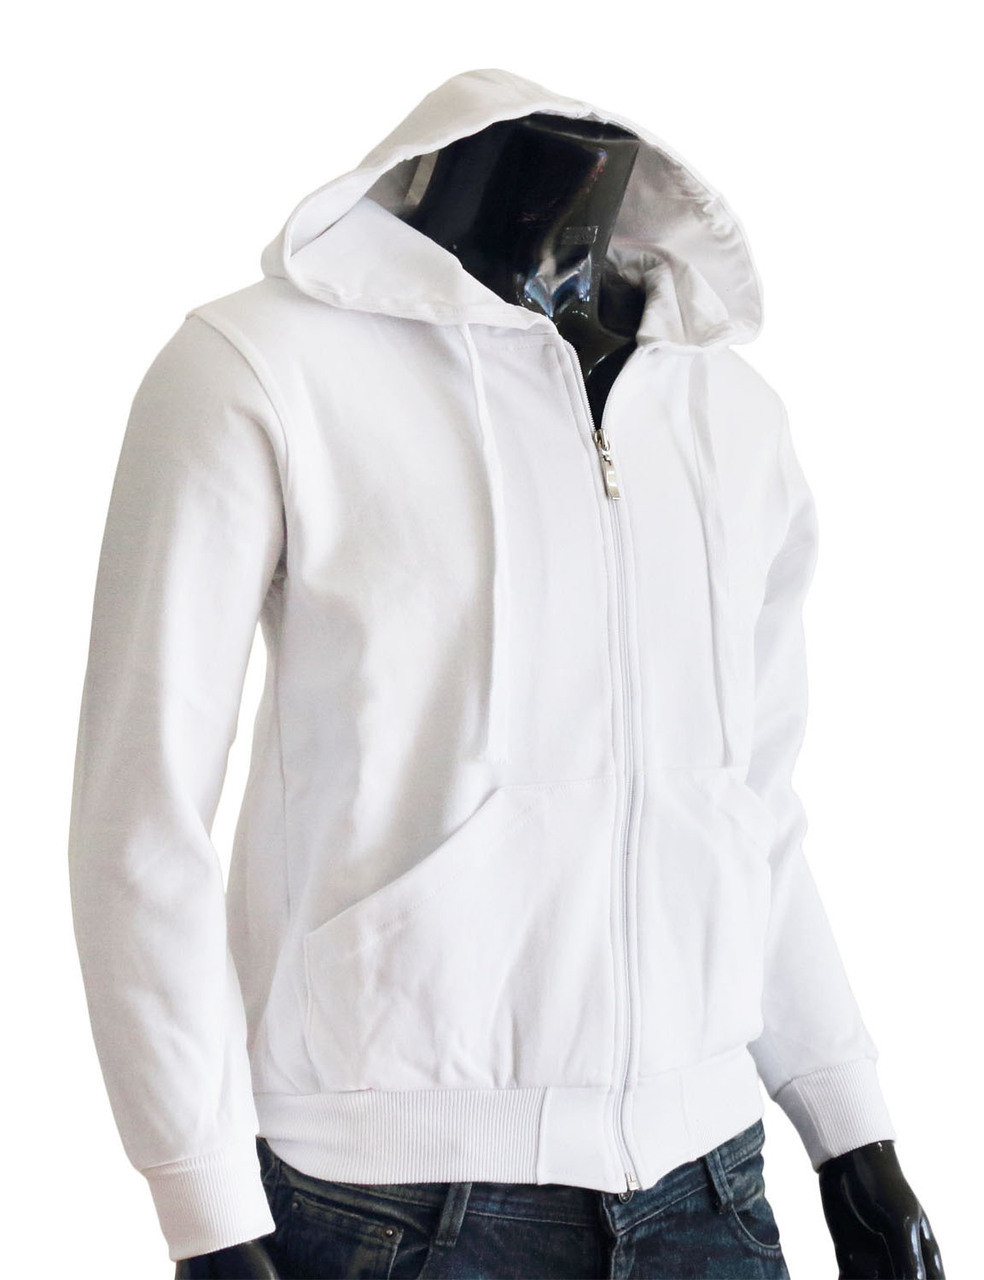 Bcpolo zip hoodie Brown hoodie Plain Solid zip up hoodie